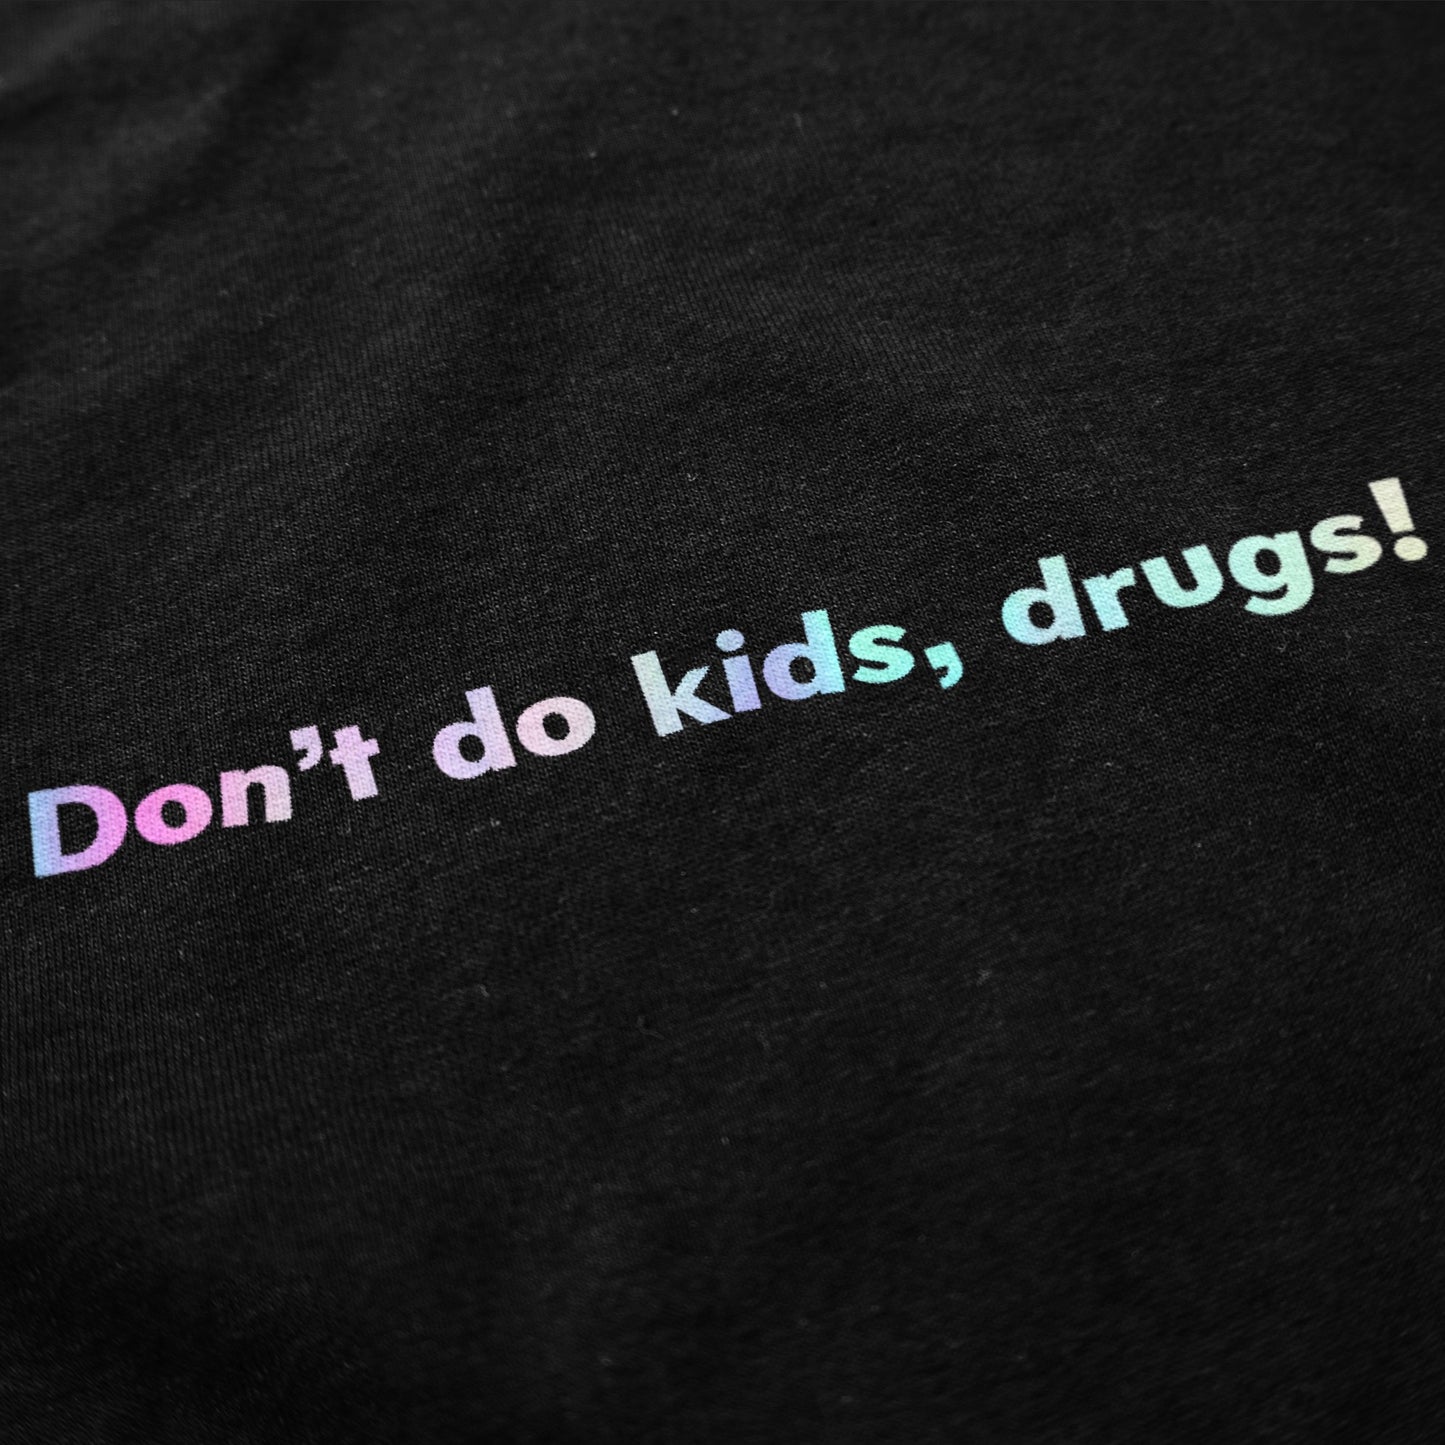 Don't Do Kids, Drugs Tee